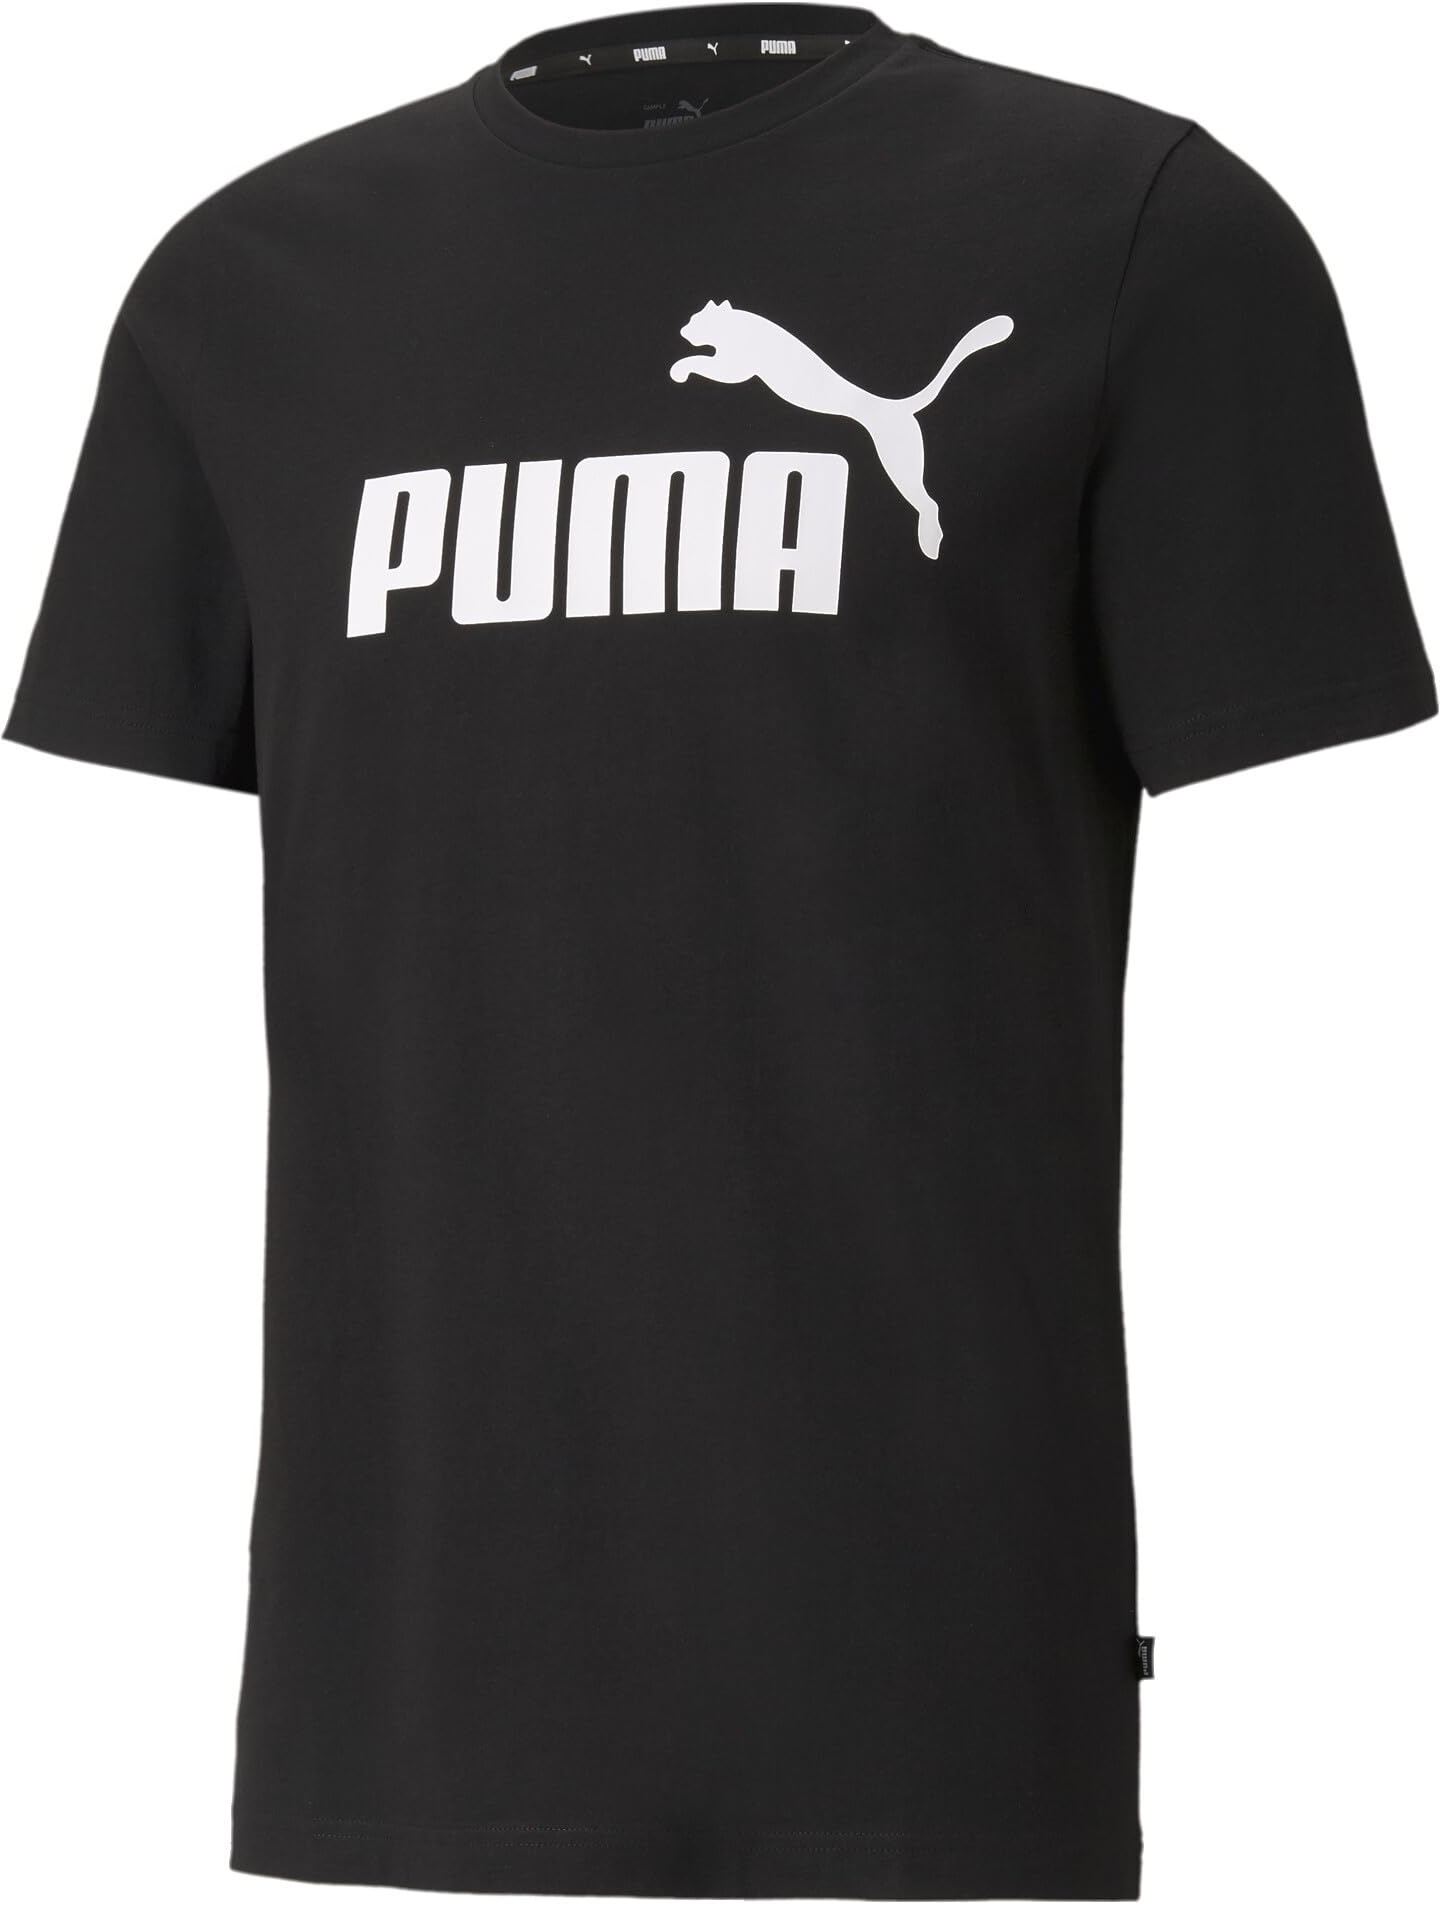 PUMA Herren Ess logo te T shirt, Puma Black, L EU